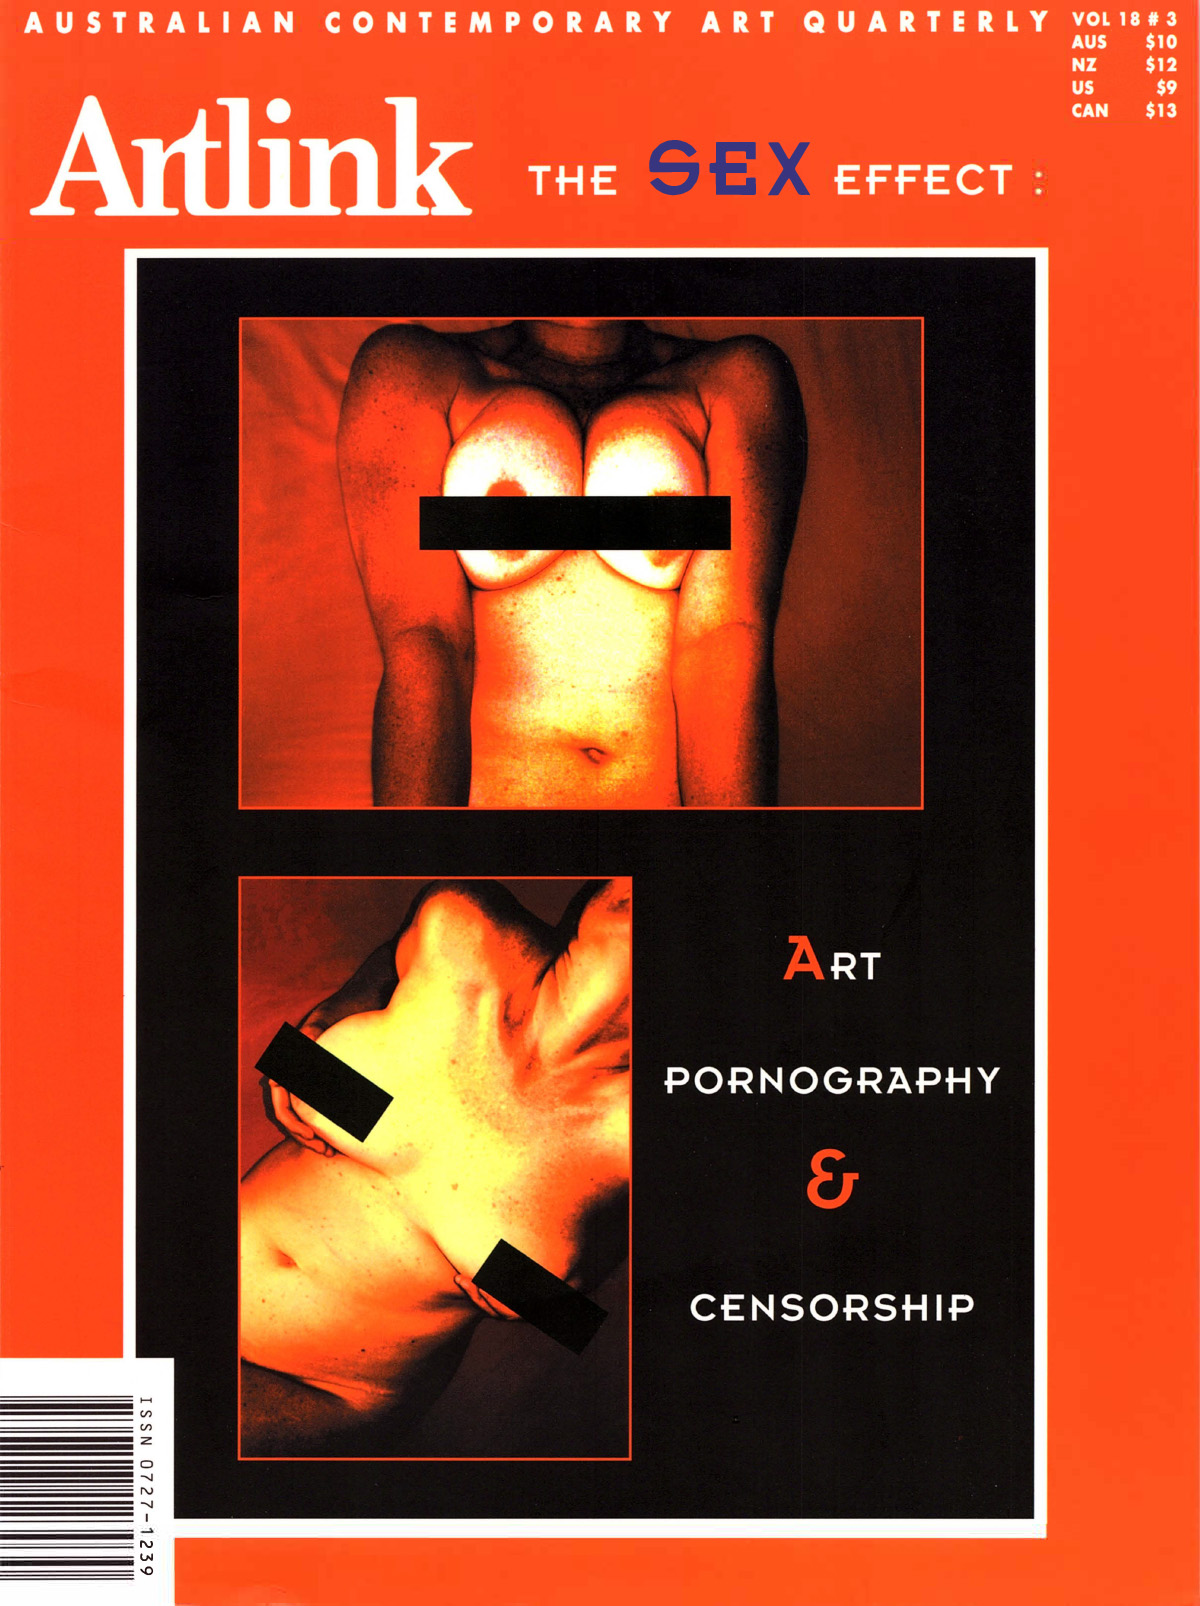 Issue 18:3 | September 1998 | Art, Pornography & Censorship